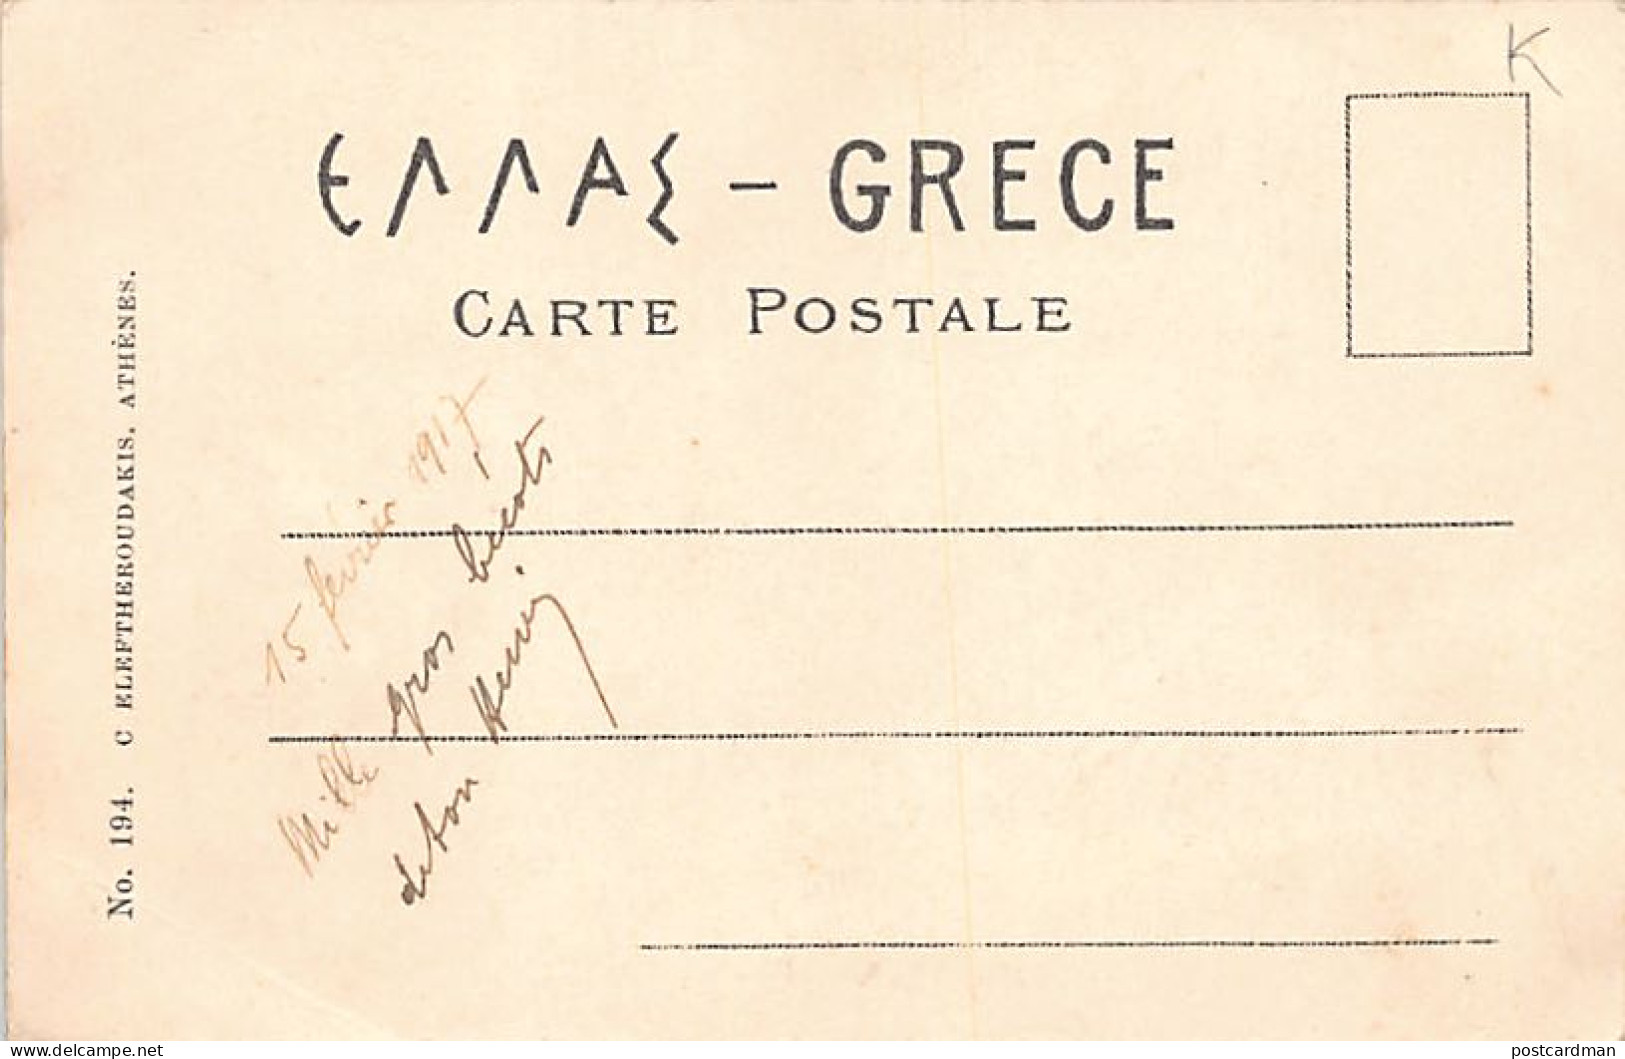 Greece - ATHENS - The Shoe-blacks - Publ. Eleftheroudakis 194. - Griechenland